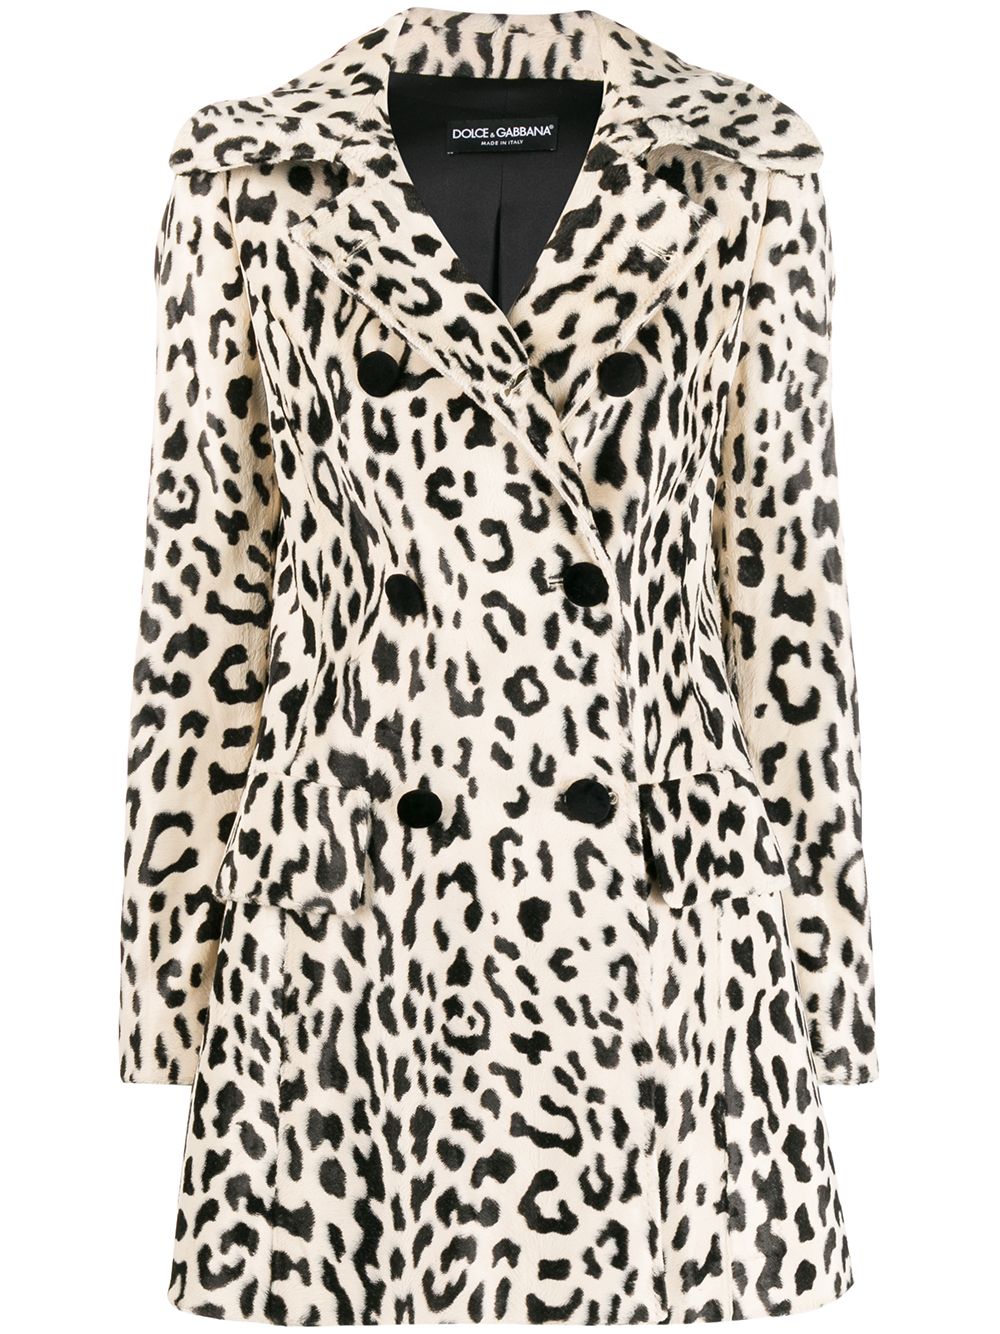 фото Dolce & gabbana двубортное фактурное пальто с леопардовым принтом